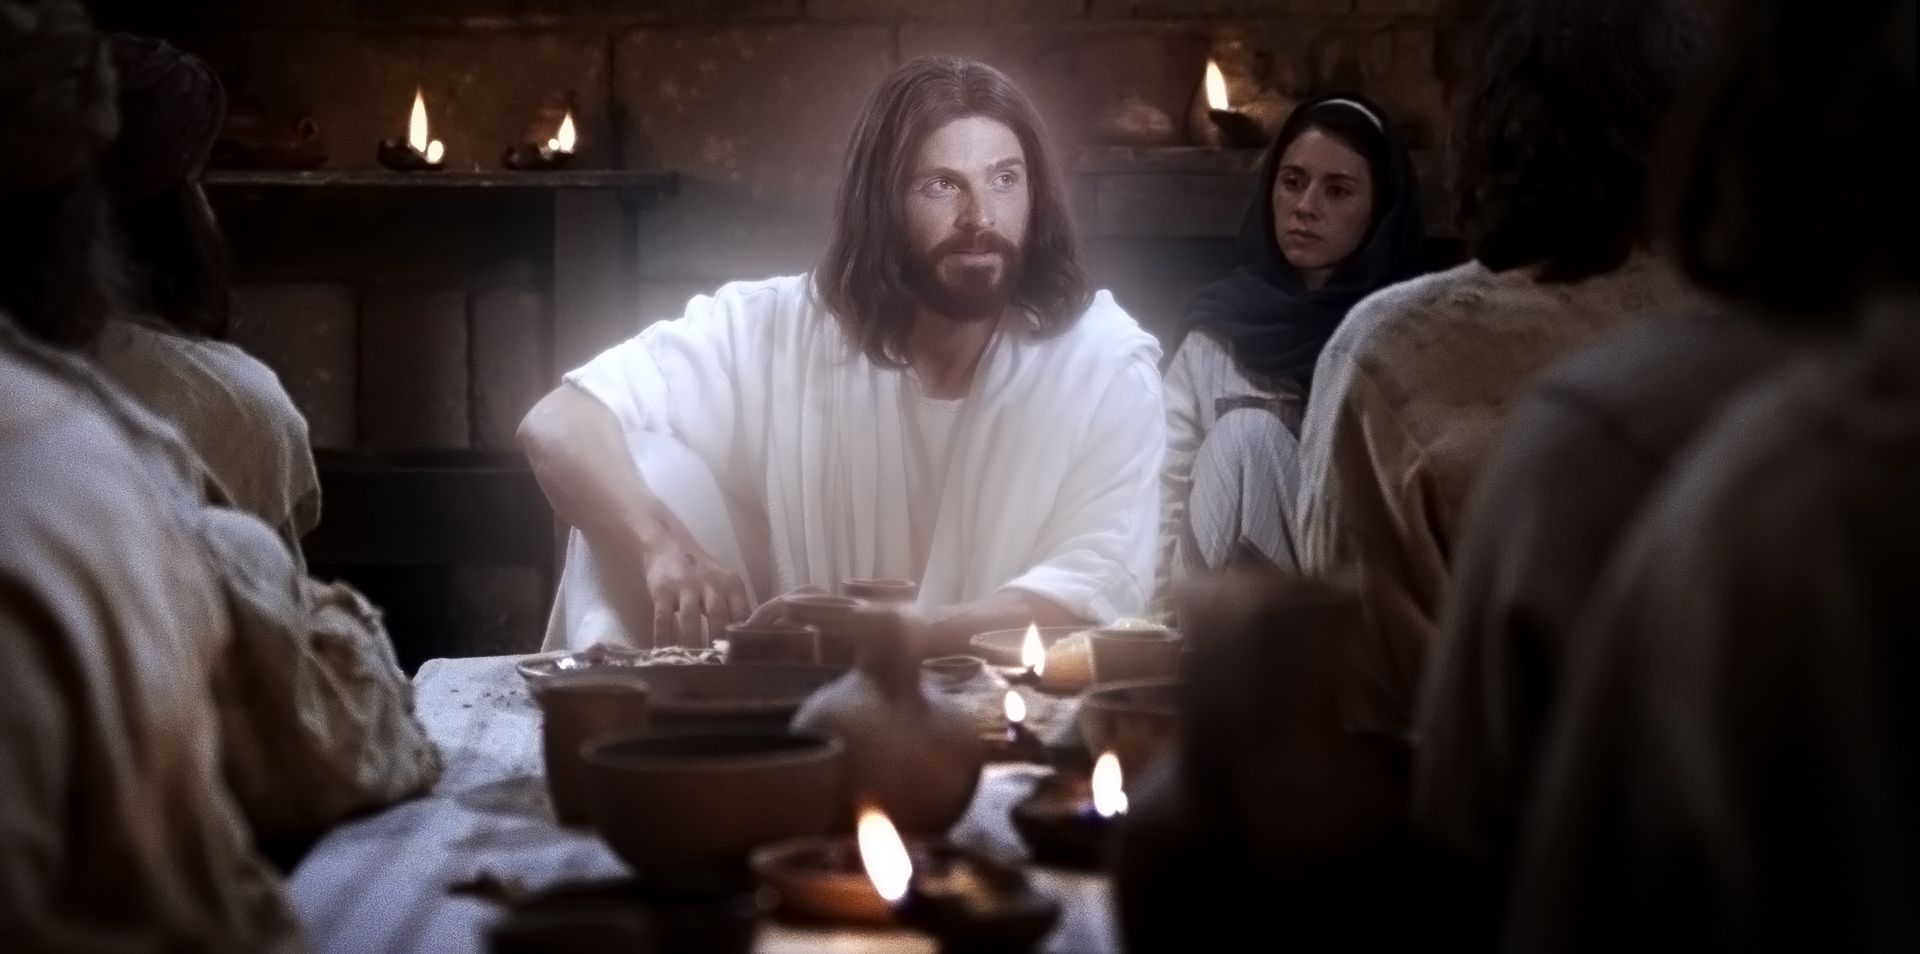 Jesucristo se sienta con Sus apóstoles y discípulos después de haber resucitado y les enseña.